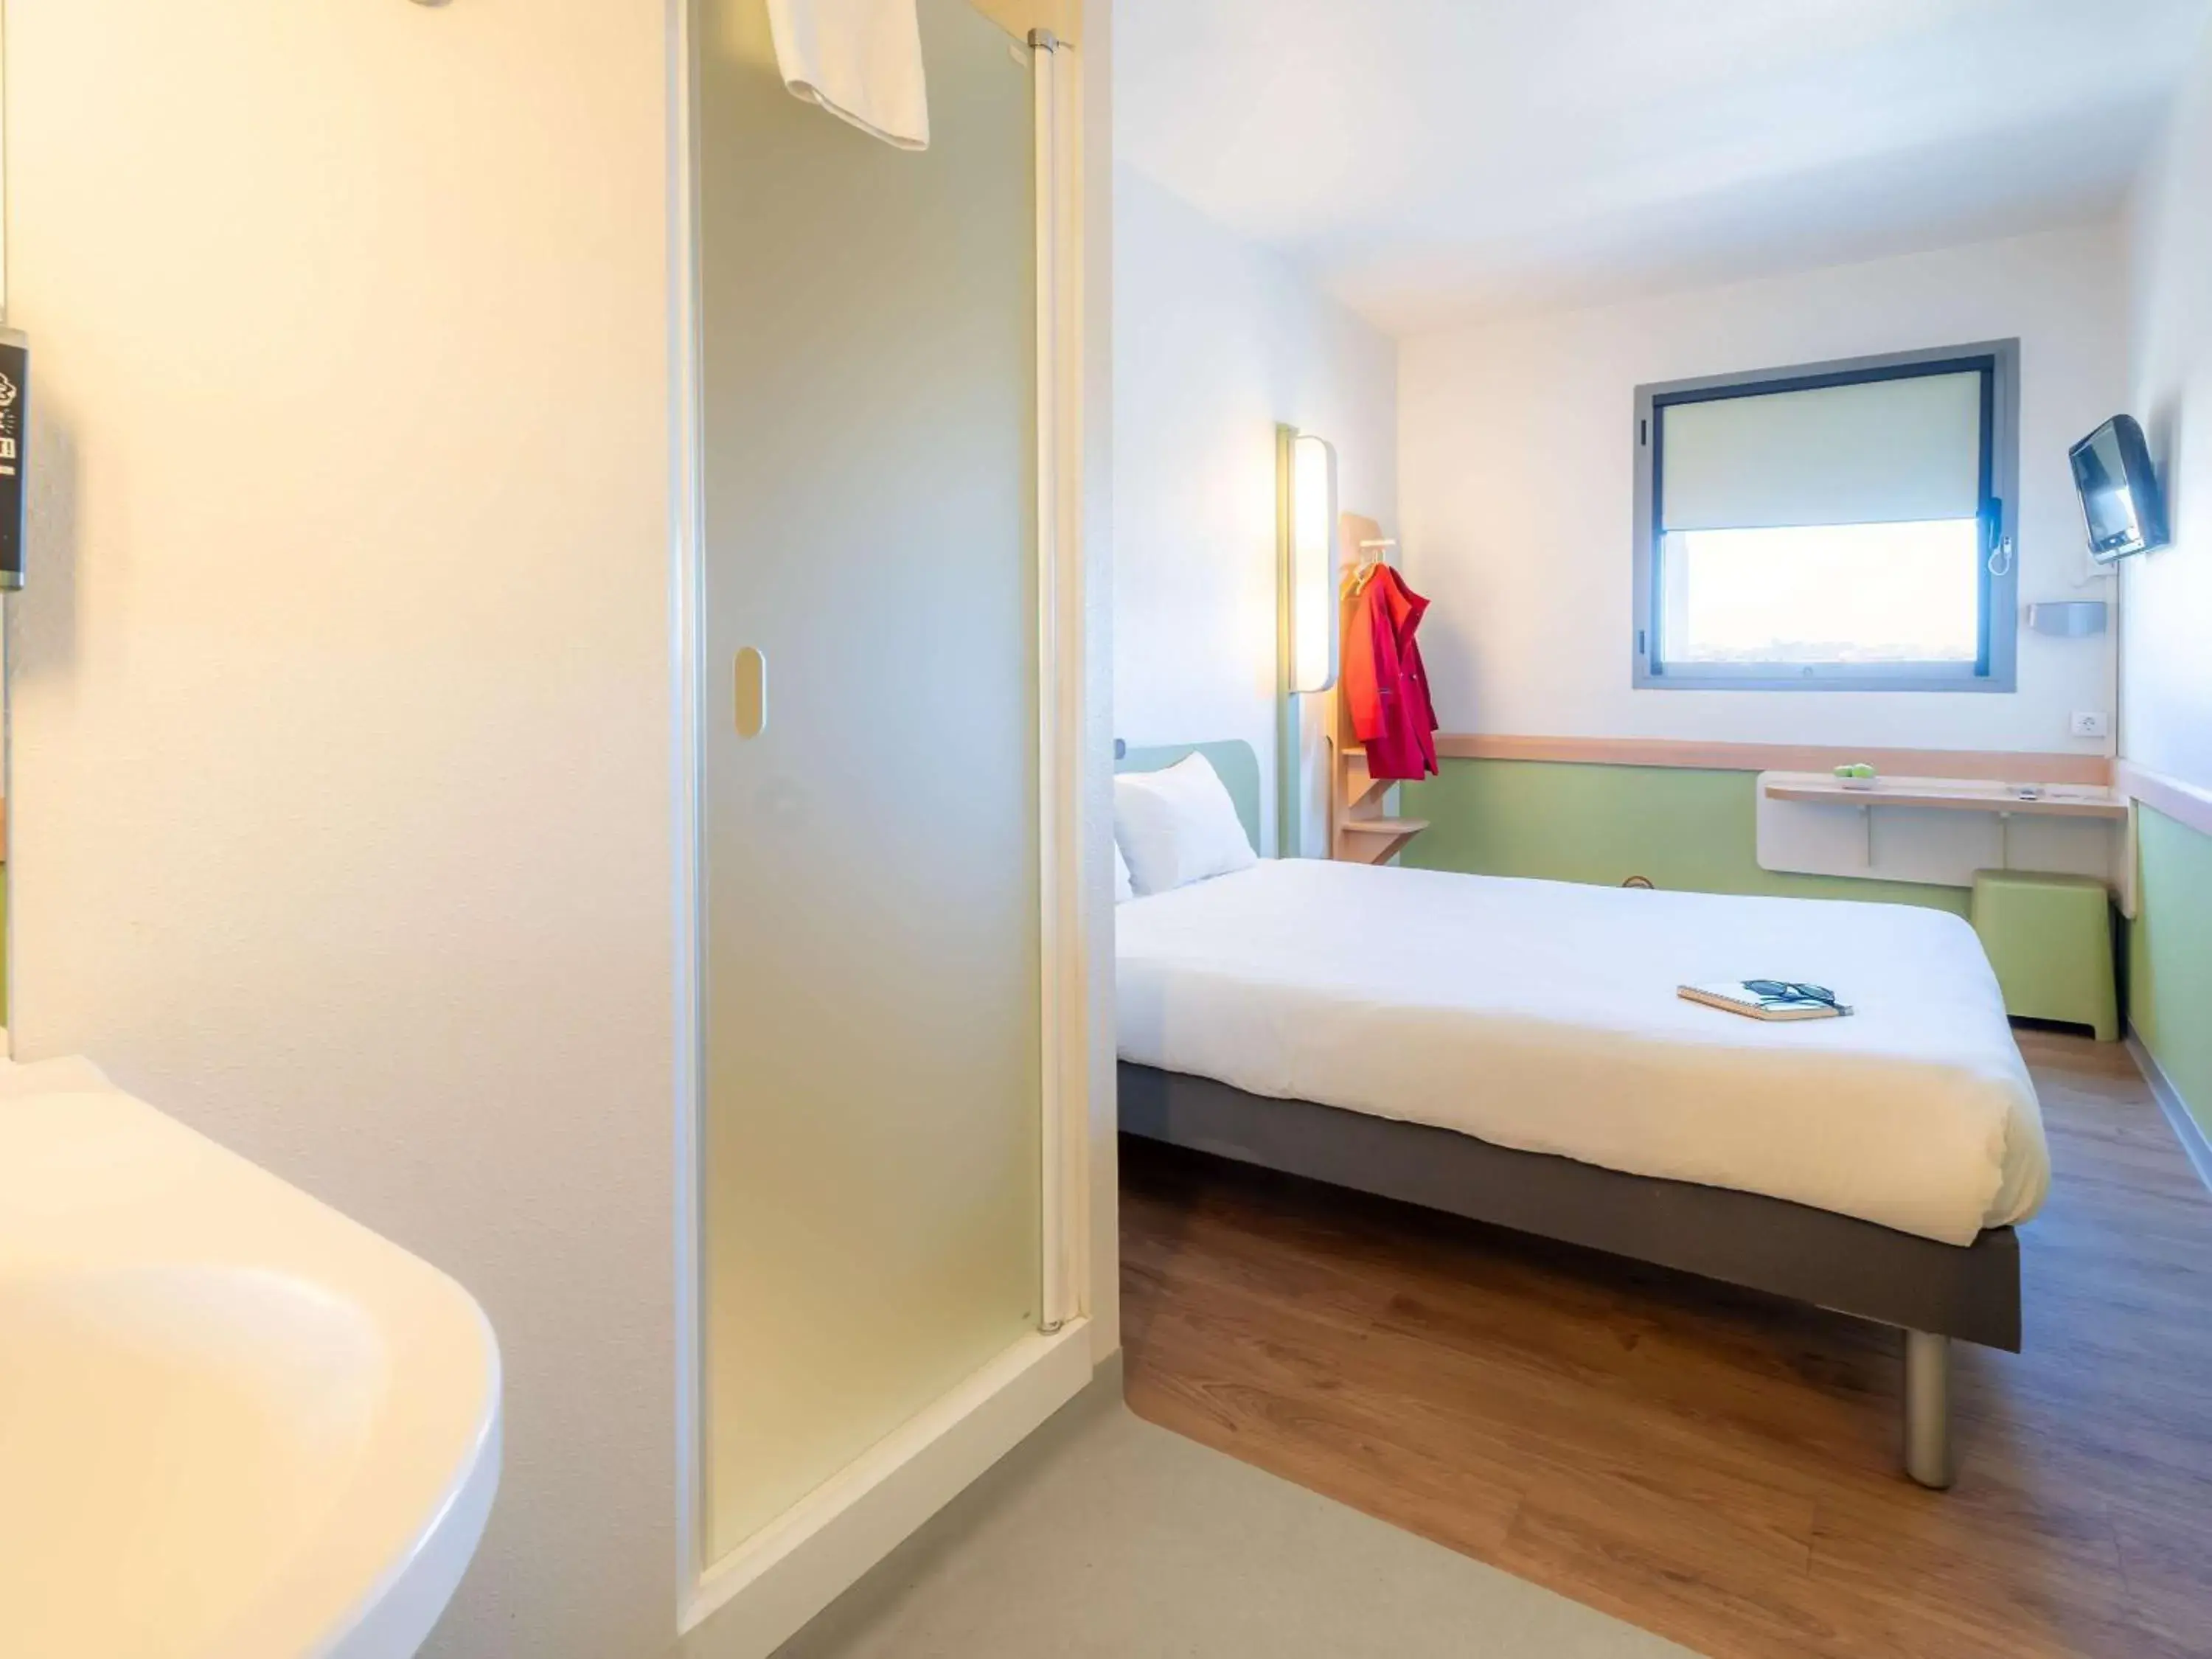 Bedroom, Bathroom in Ibis Budget Madrid Vallecas